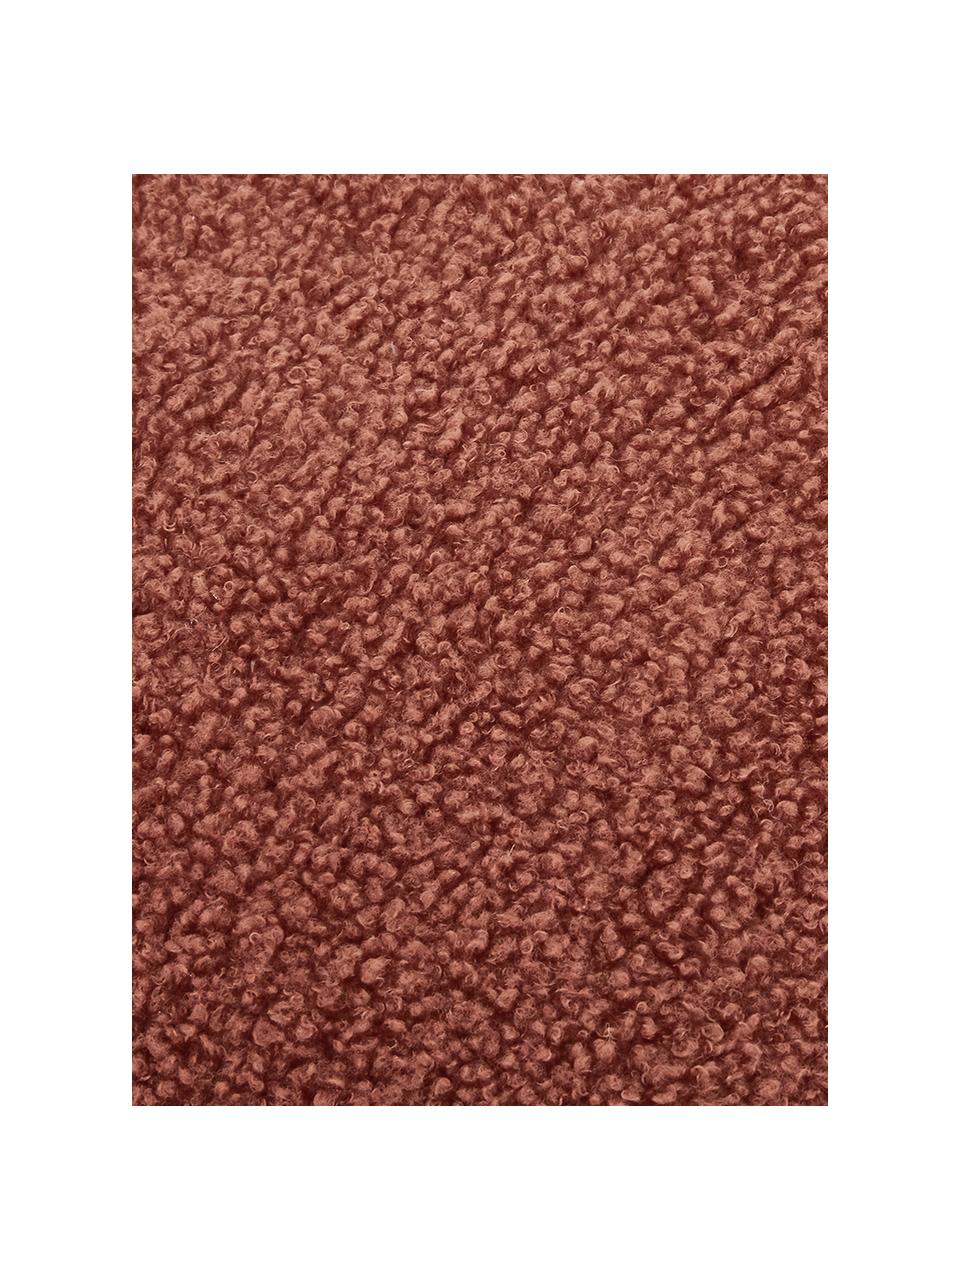 Housse de coussin rectangulaire tissu peluche rouille Mille, 100 % polyester (tissu peluche), Rouille, larg. 30 x long. 50 cm